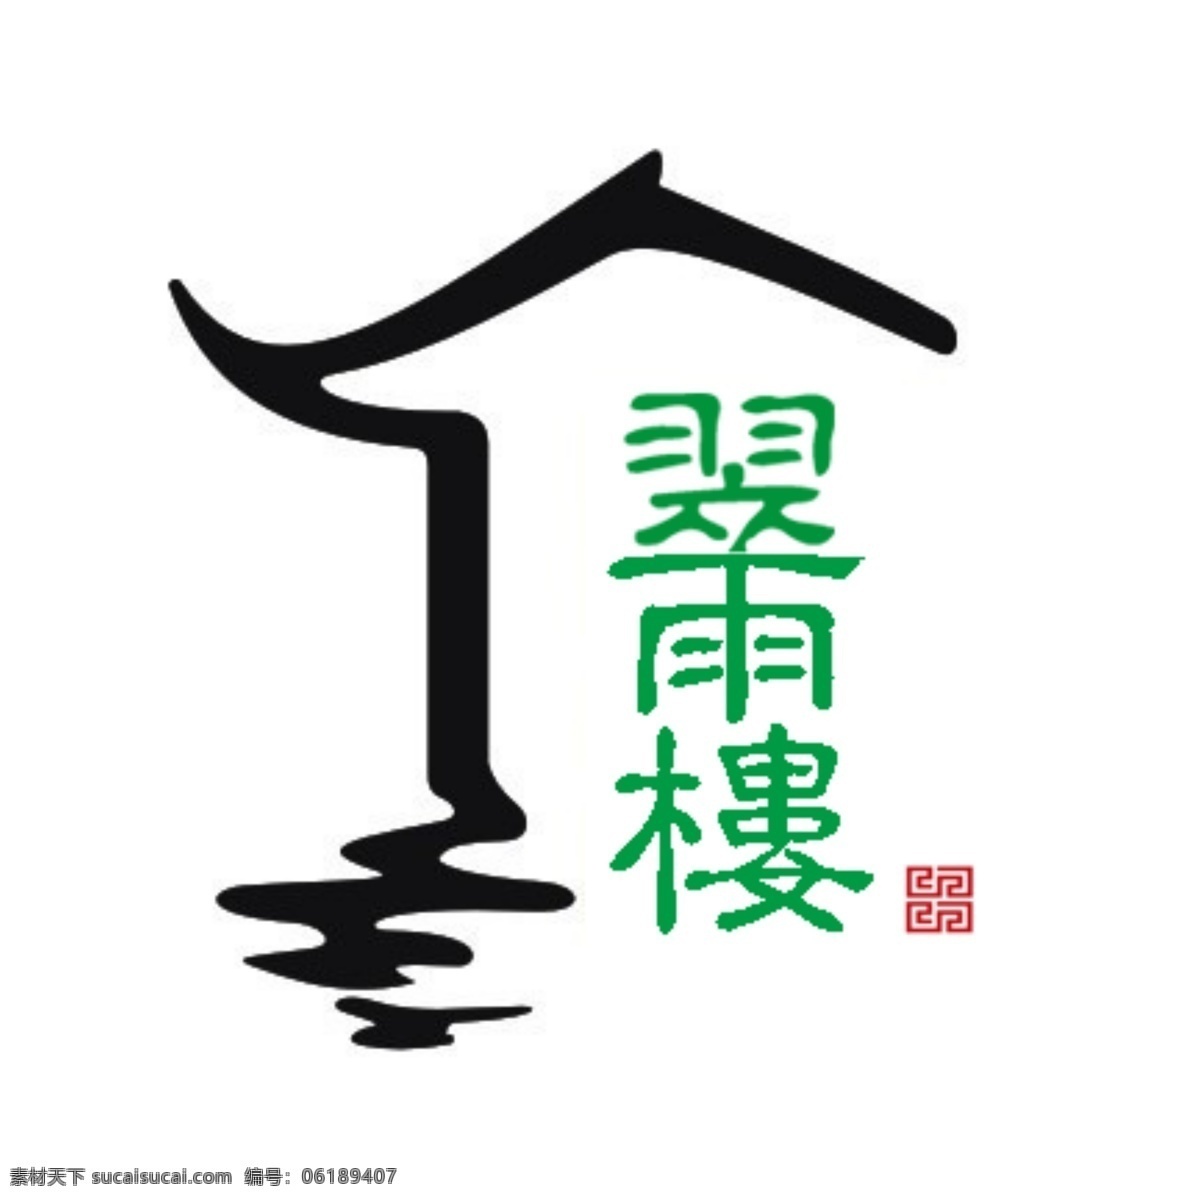 翠 雨 楼 logo 房屋 中国风 翡翠 茶馆